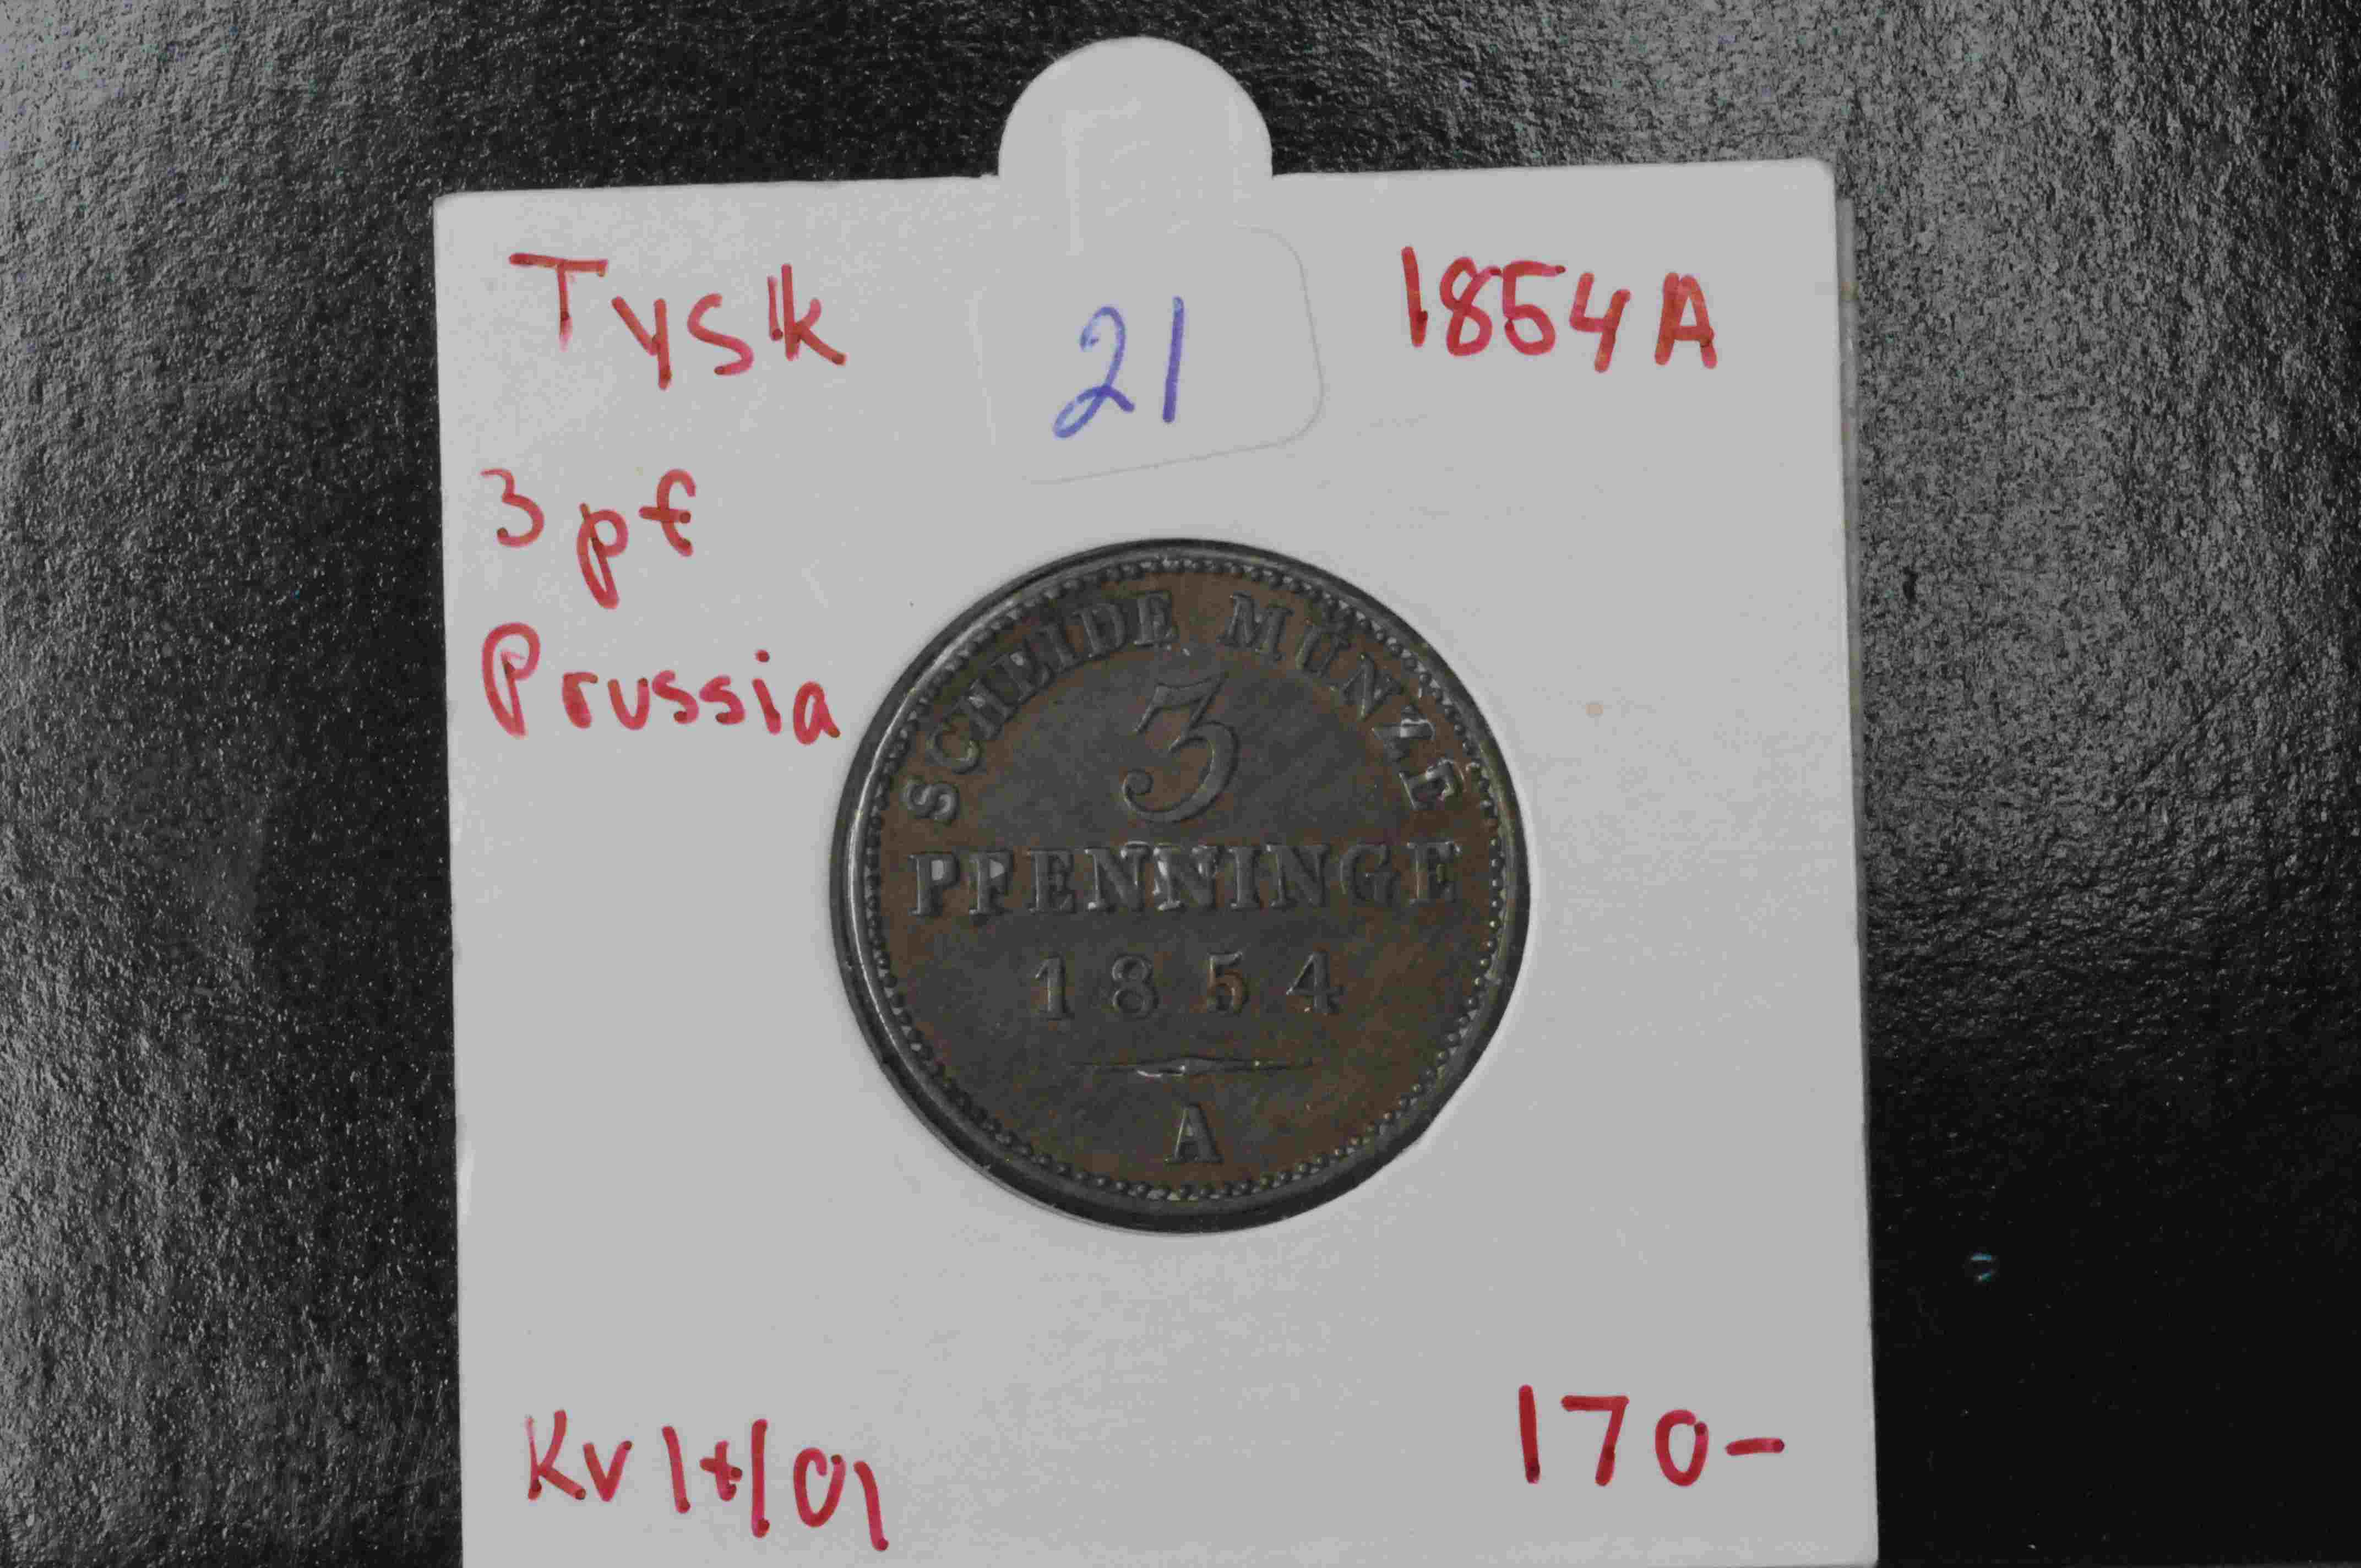 3 pf Prussia 1854 A kv1+/01